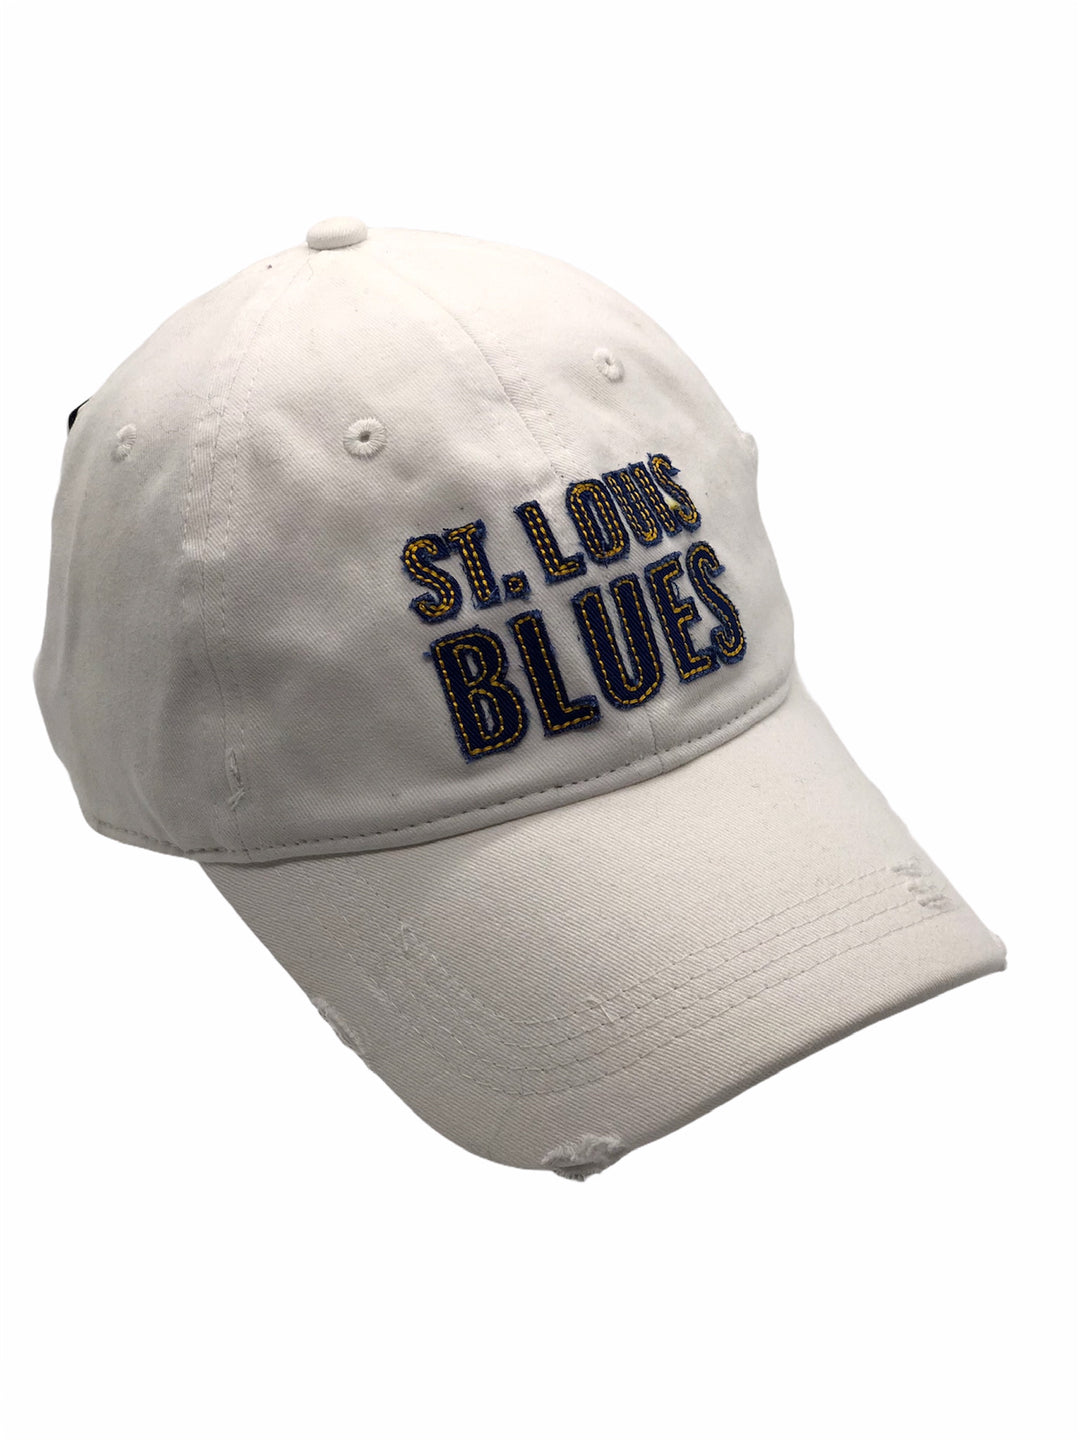 St. Louis Blues Dad Hat